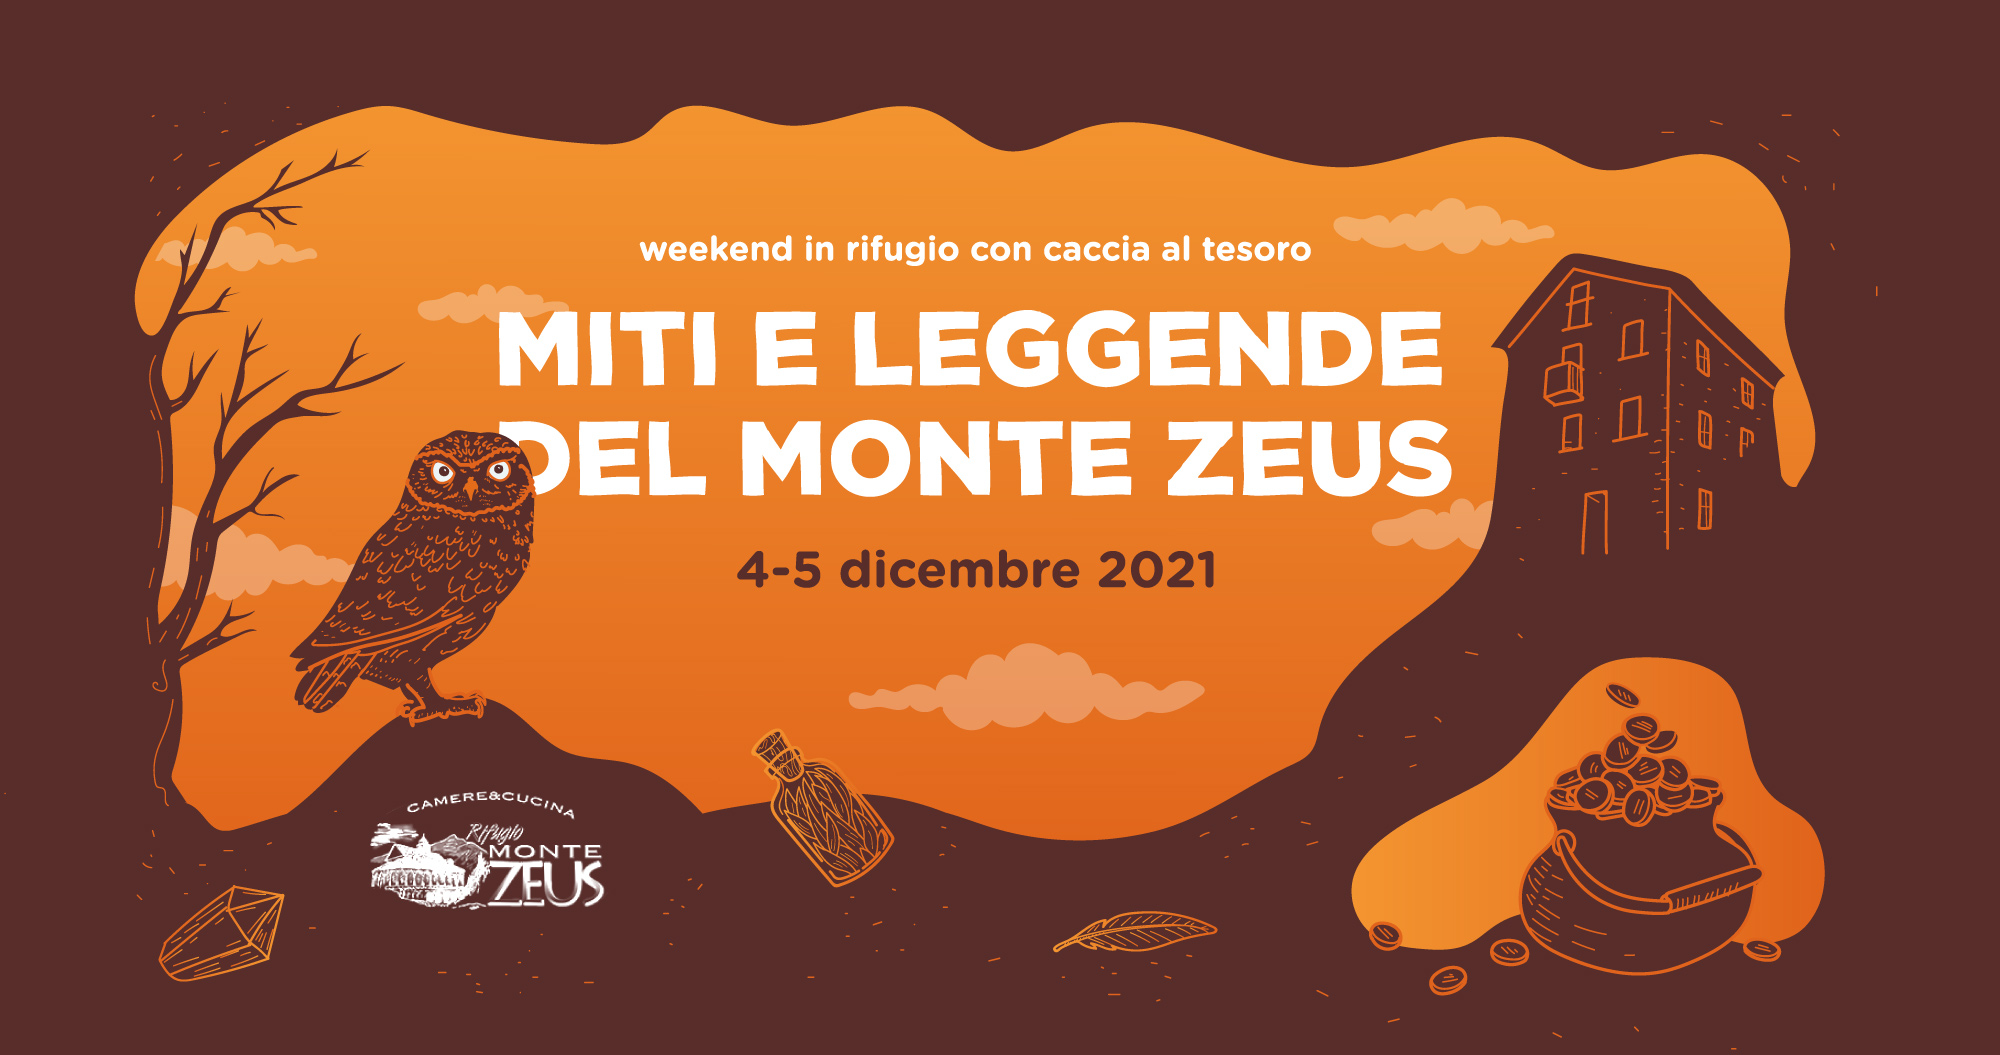 Miti e leggende del Monte Zeus – Weekend con caccia al tesoro